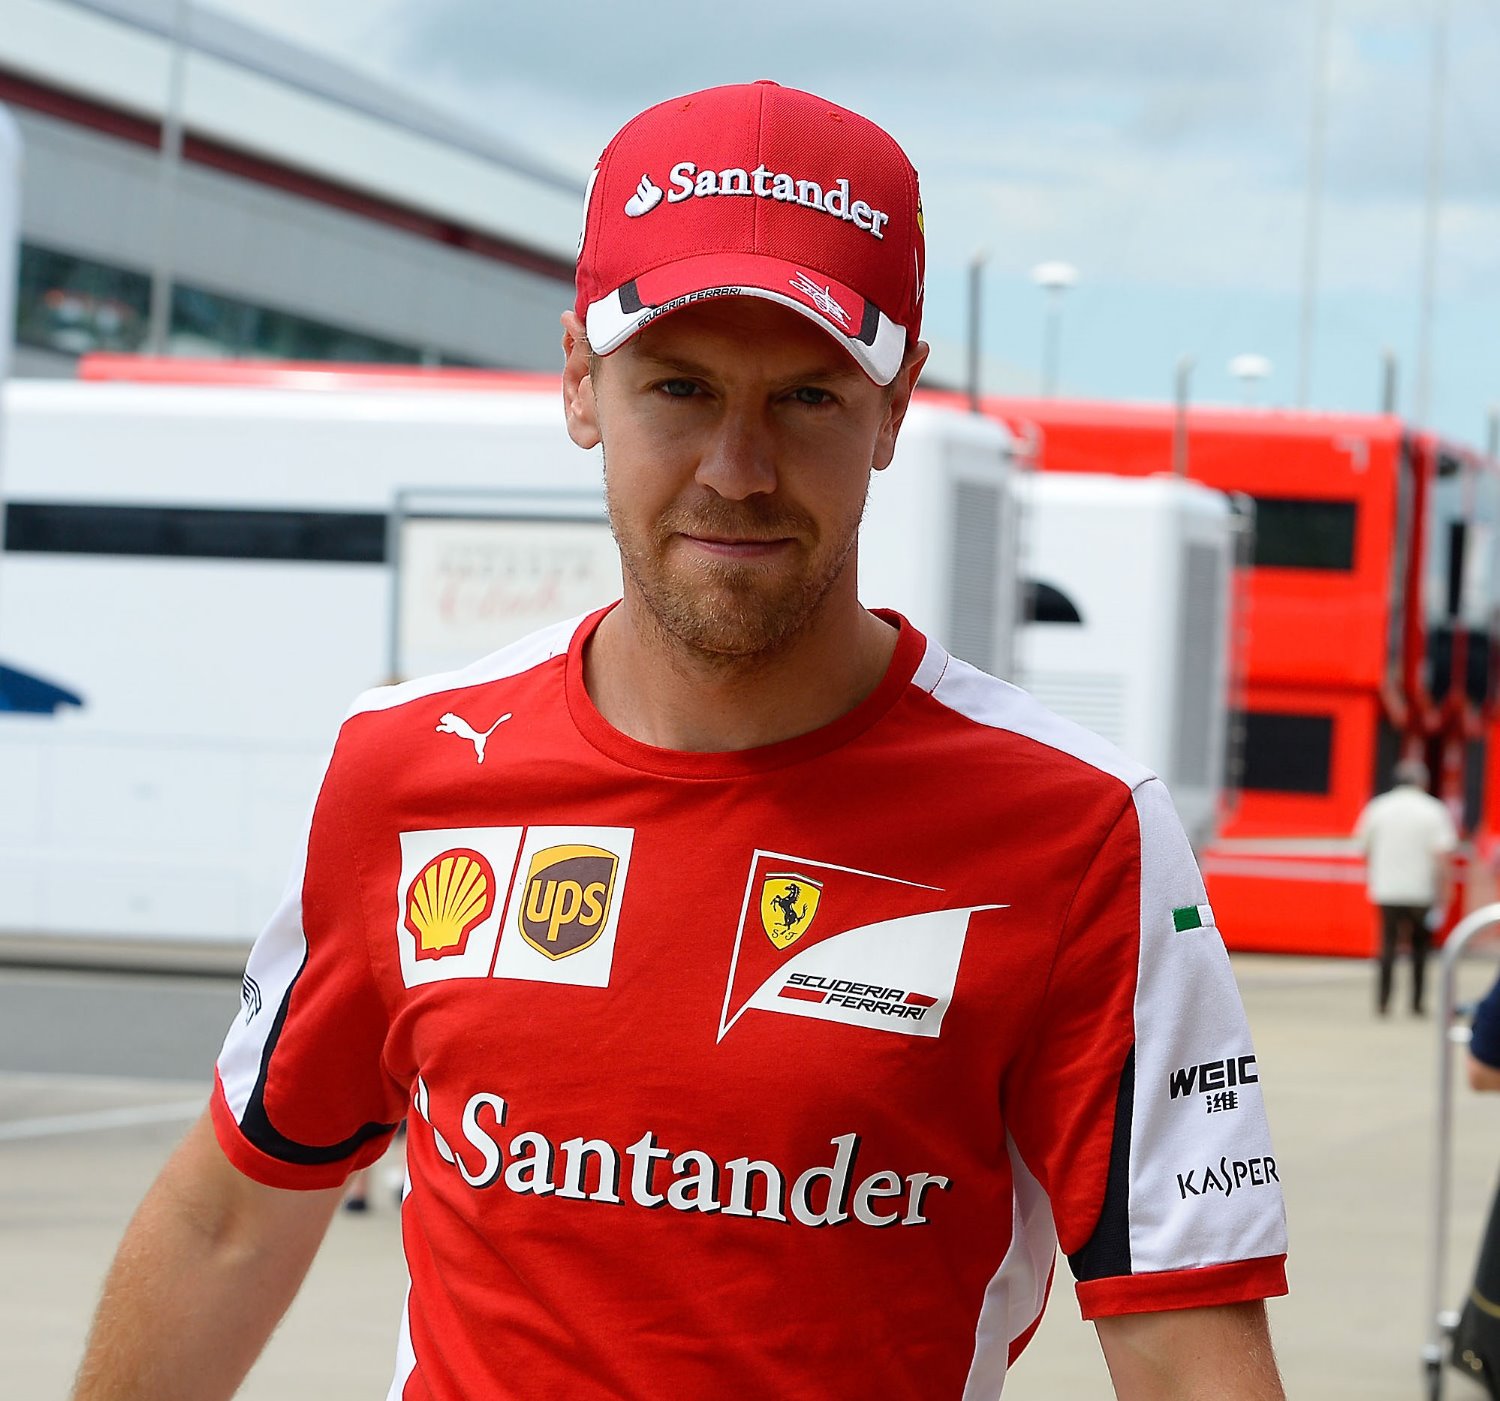 Vettel gets along well with Raikkonen